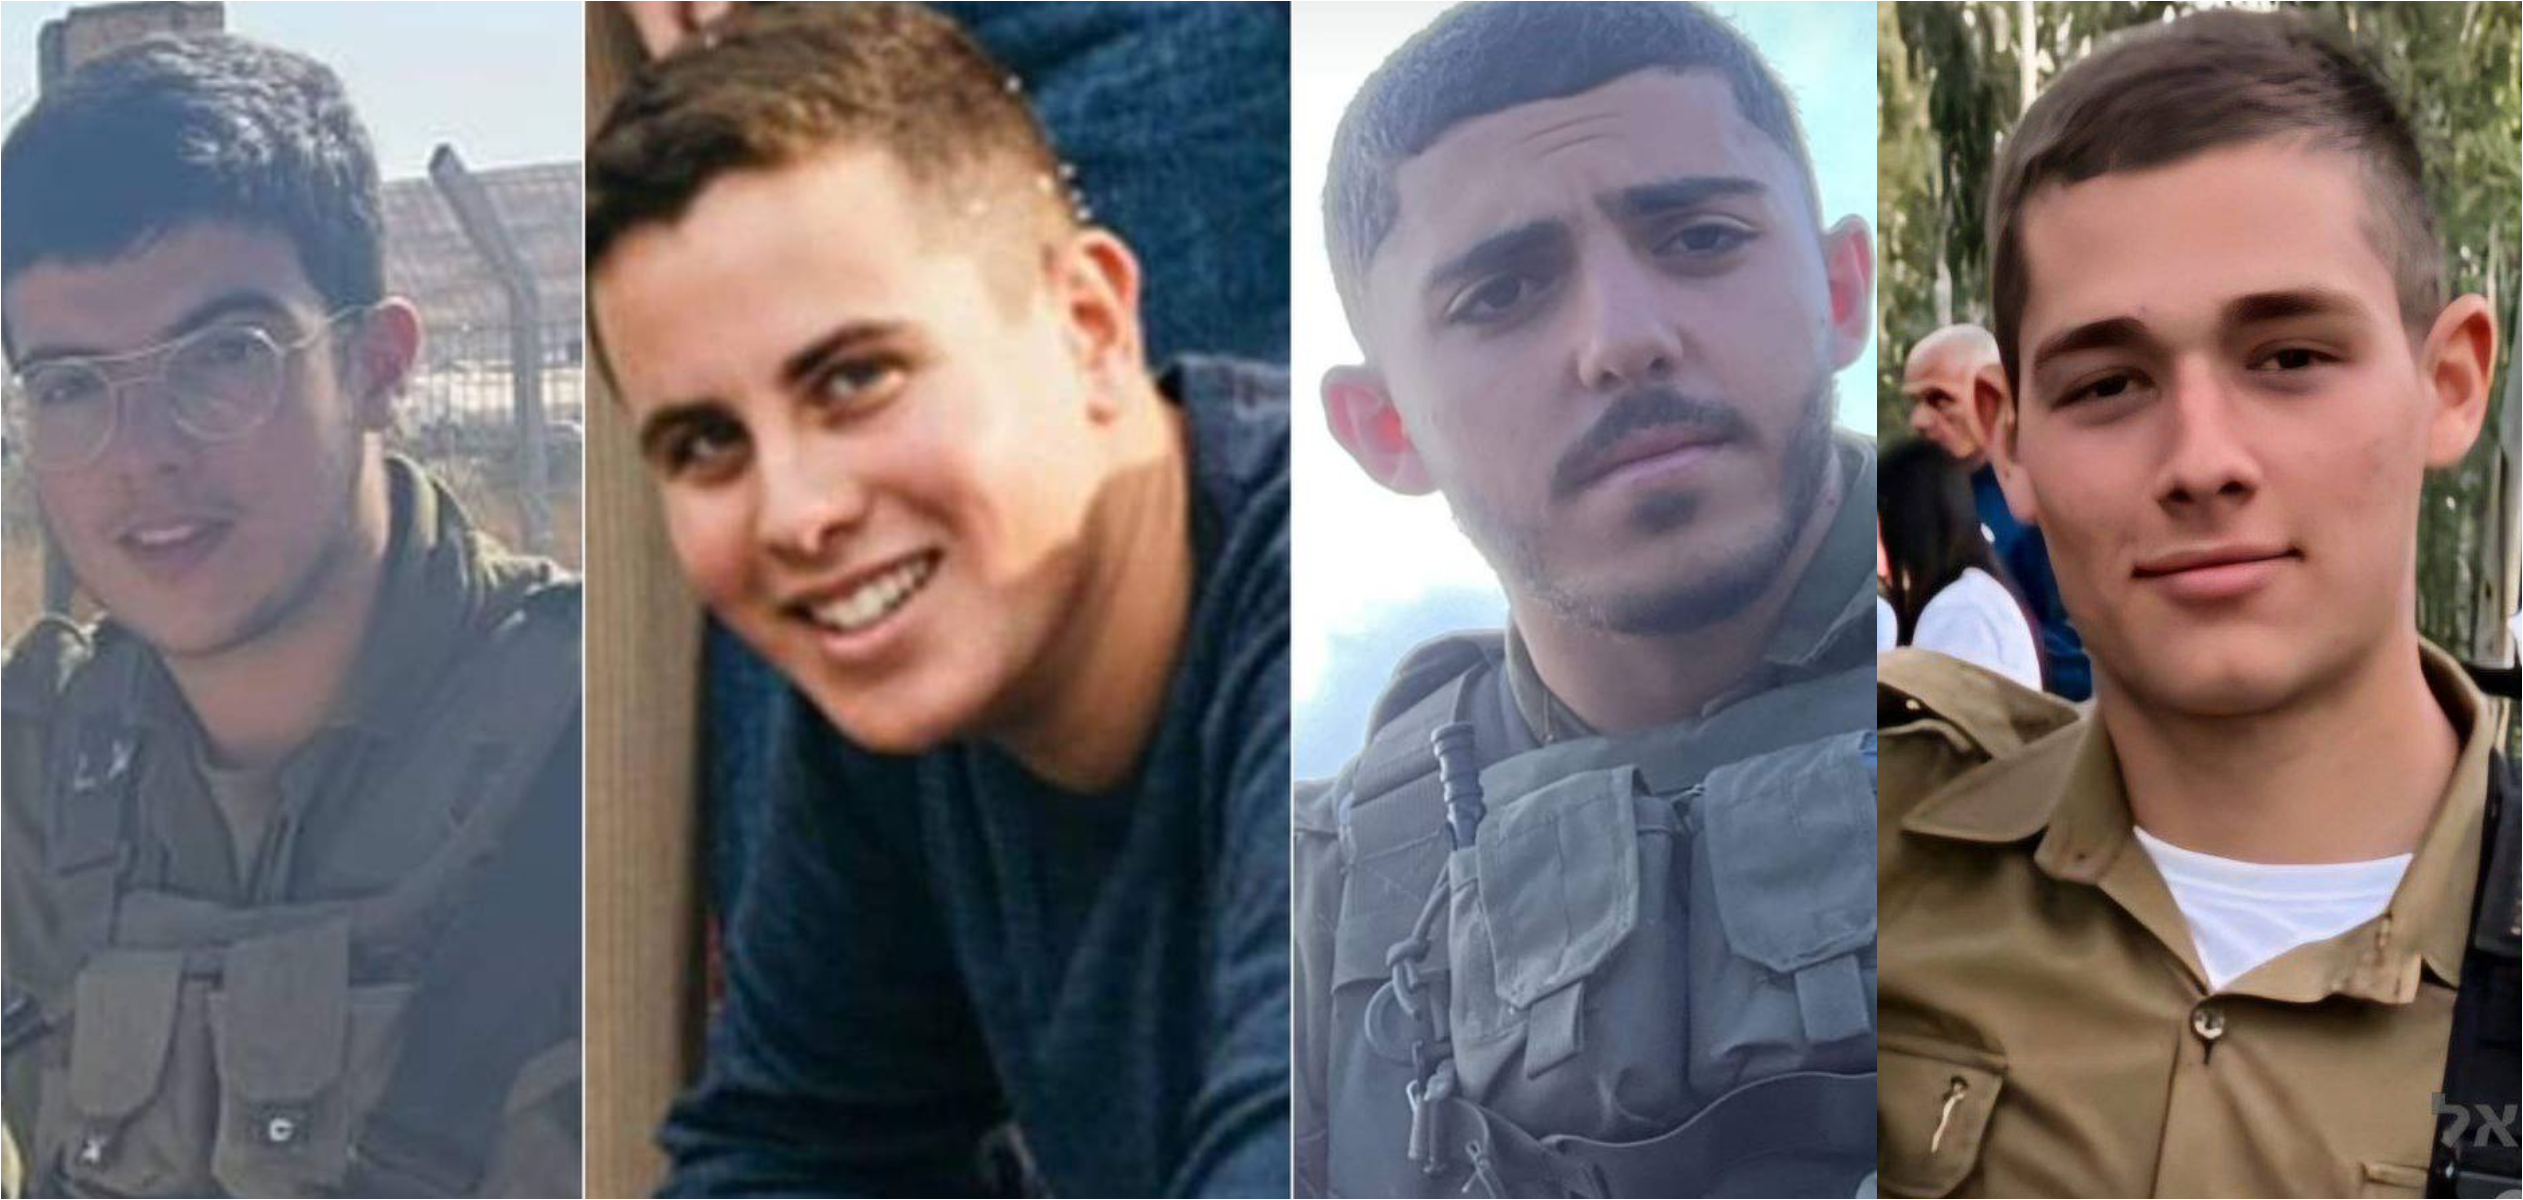  4 جنود قتلوا في قصف معبر كرم أبو سالم